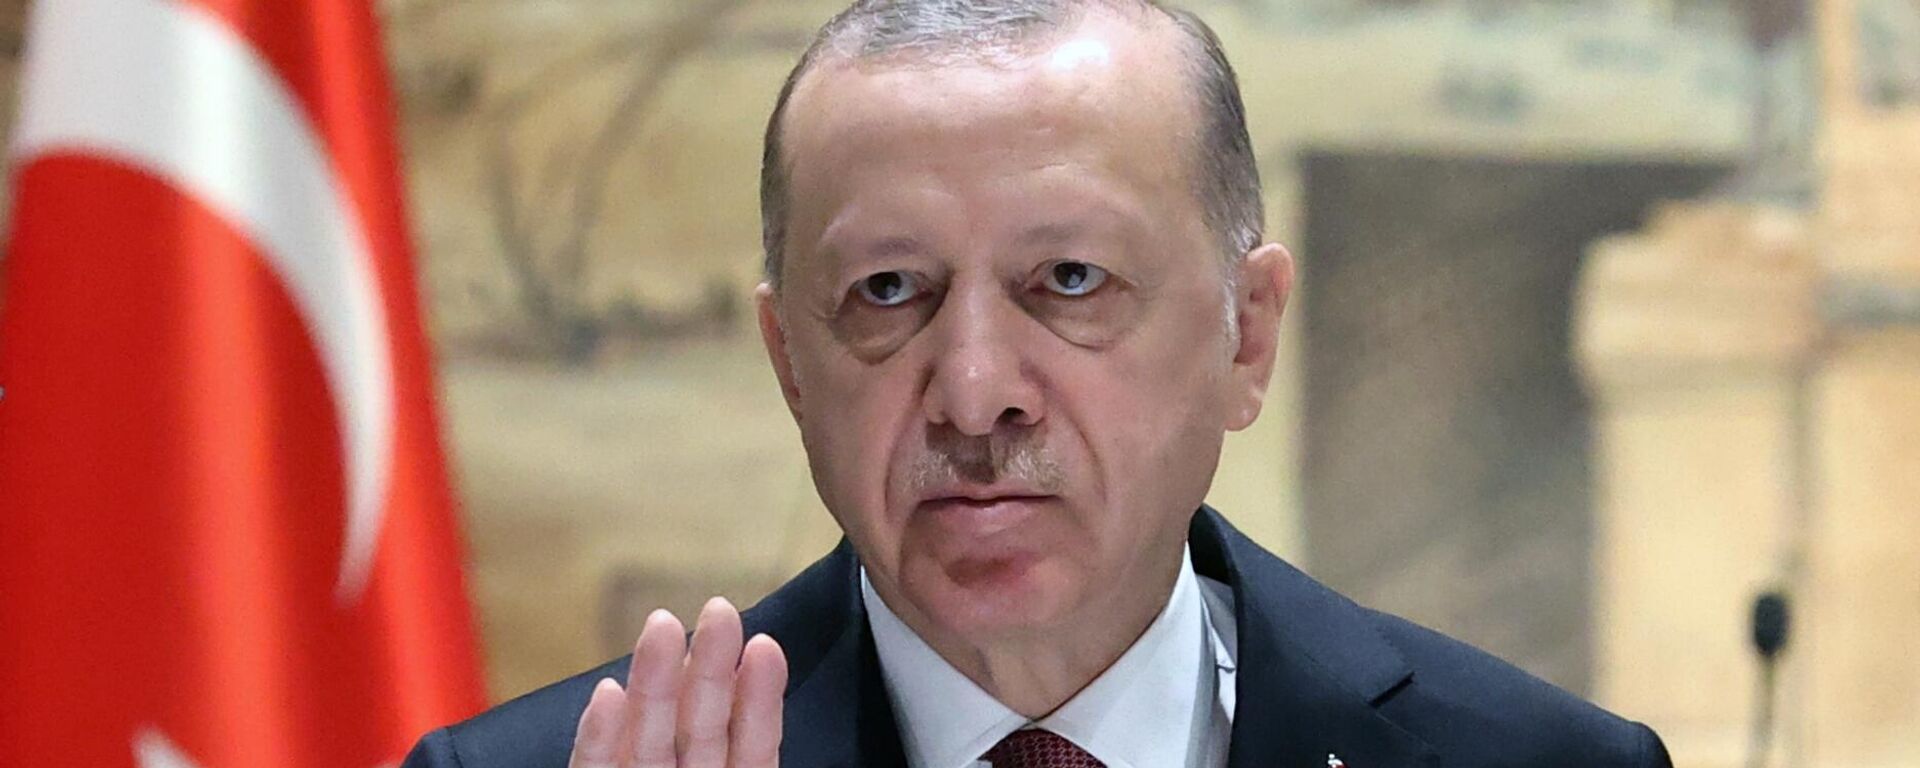 O presidente turco Recep Tayyip Erdogan discursa durante as negociações entre a Rússia e a Ucrânia no Palácio Dolmabahce, Istambul, Turquia  - Sputnik Brasil, 1920, 09.09.2022